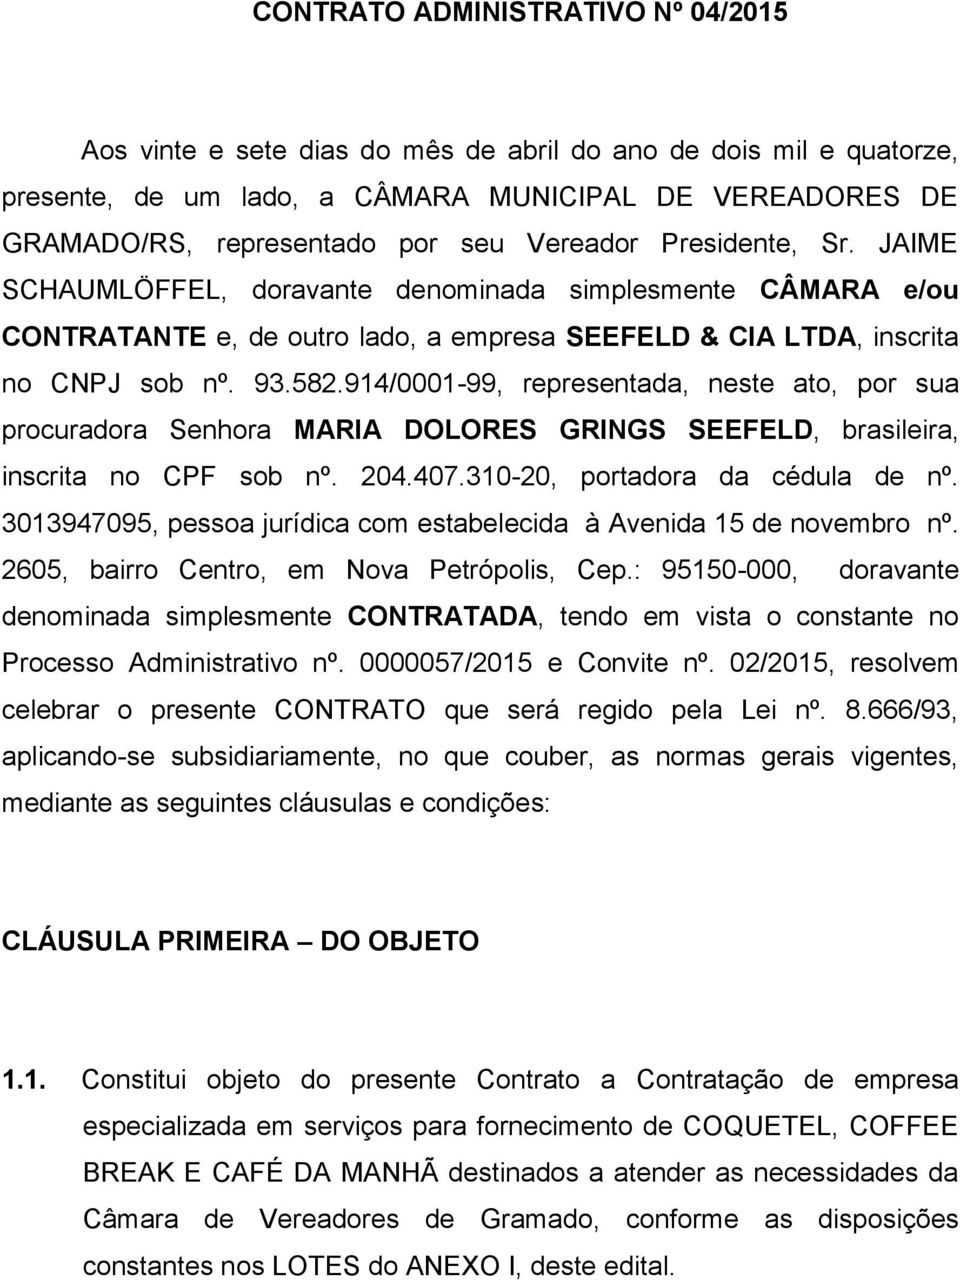 914/0001-99, representada, neste ato, por sua procuradora Senhora MARIA DOLORES GRINGS SEEFELD, brasileira, inscrita no CPF sob nº. 204.407.310-20, portadora da cédula de nº.